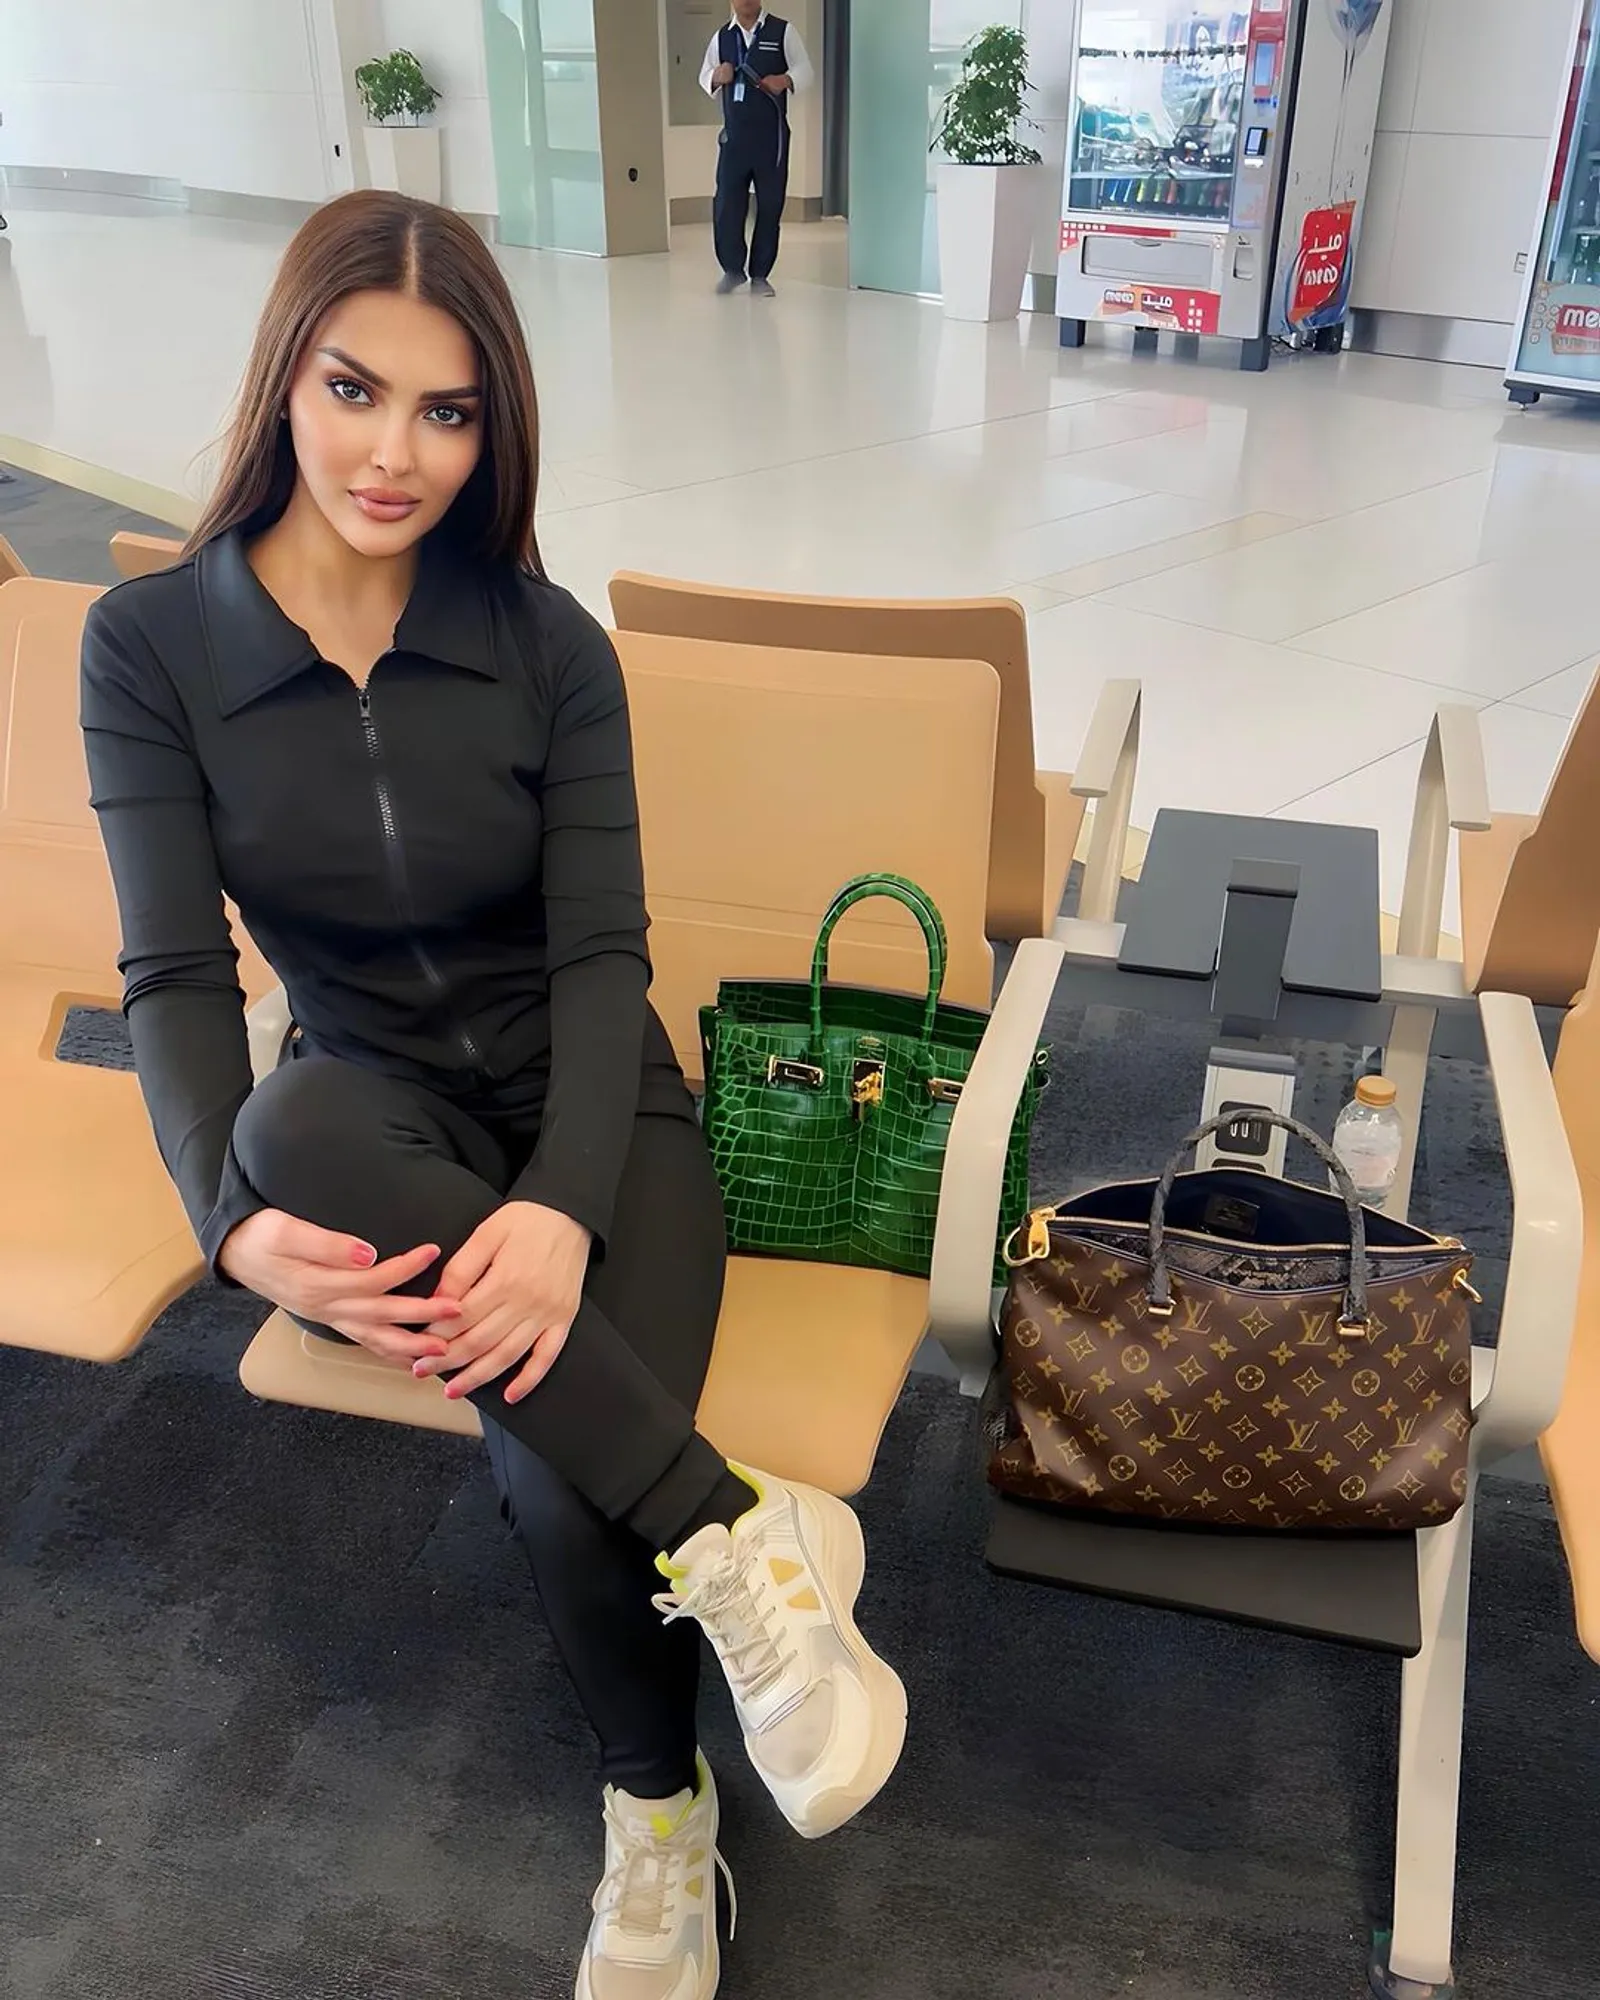 Gaya Rumy Alqahtani, Wakil Pertama Arab Saudi di Miss Universe 2024